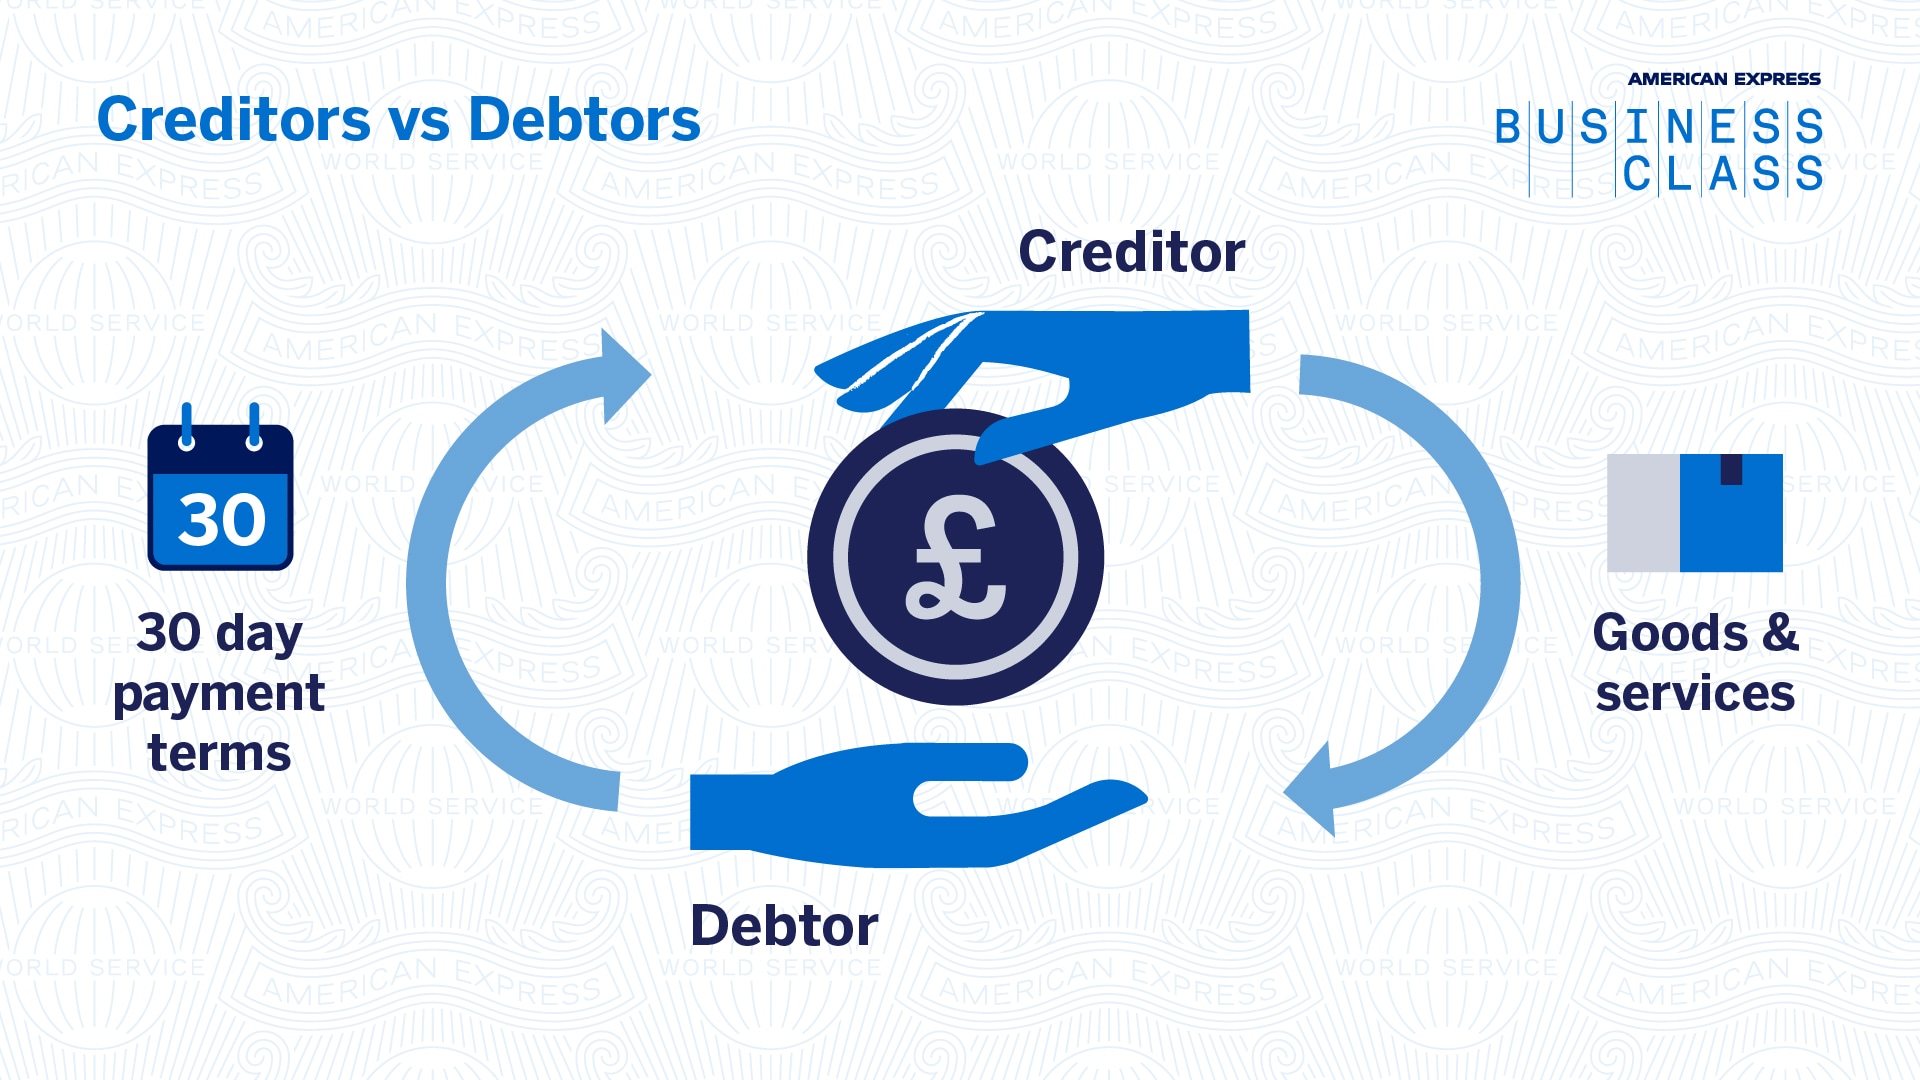 Amex_Graphic_Creditors_vs_Debtors_V1